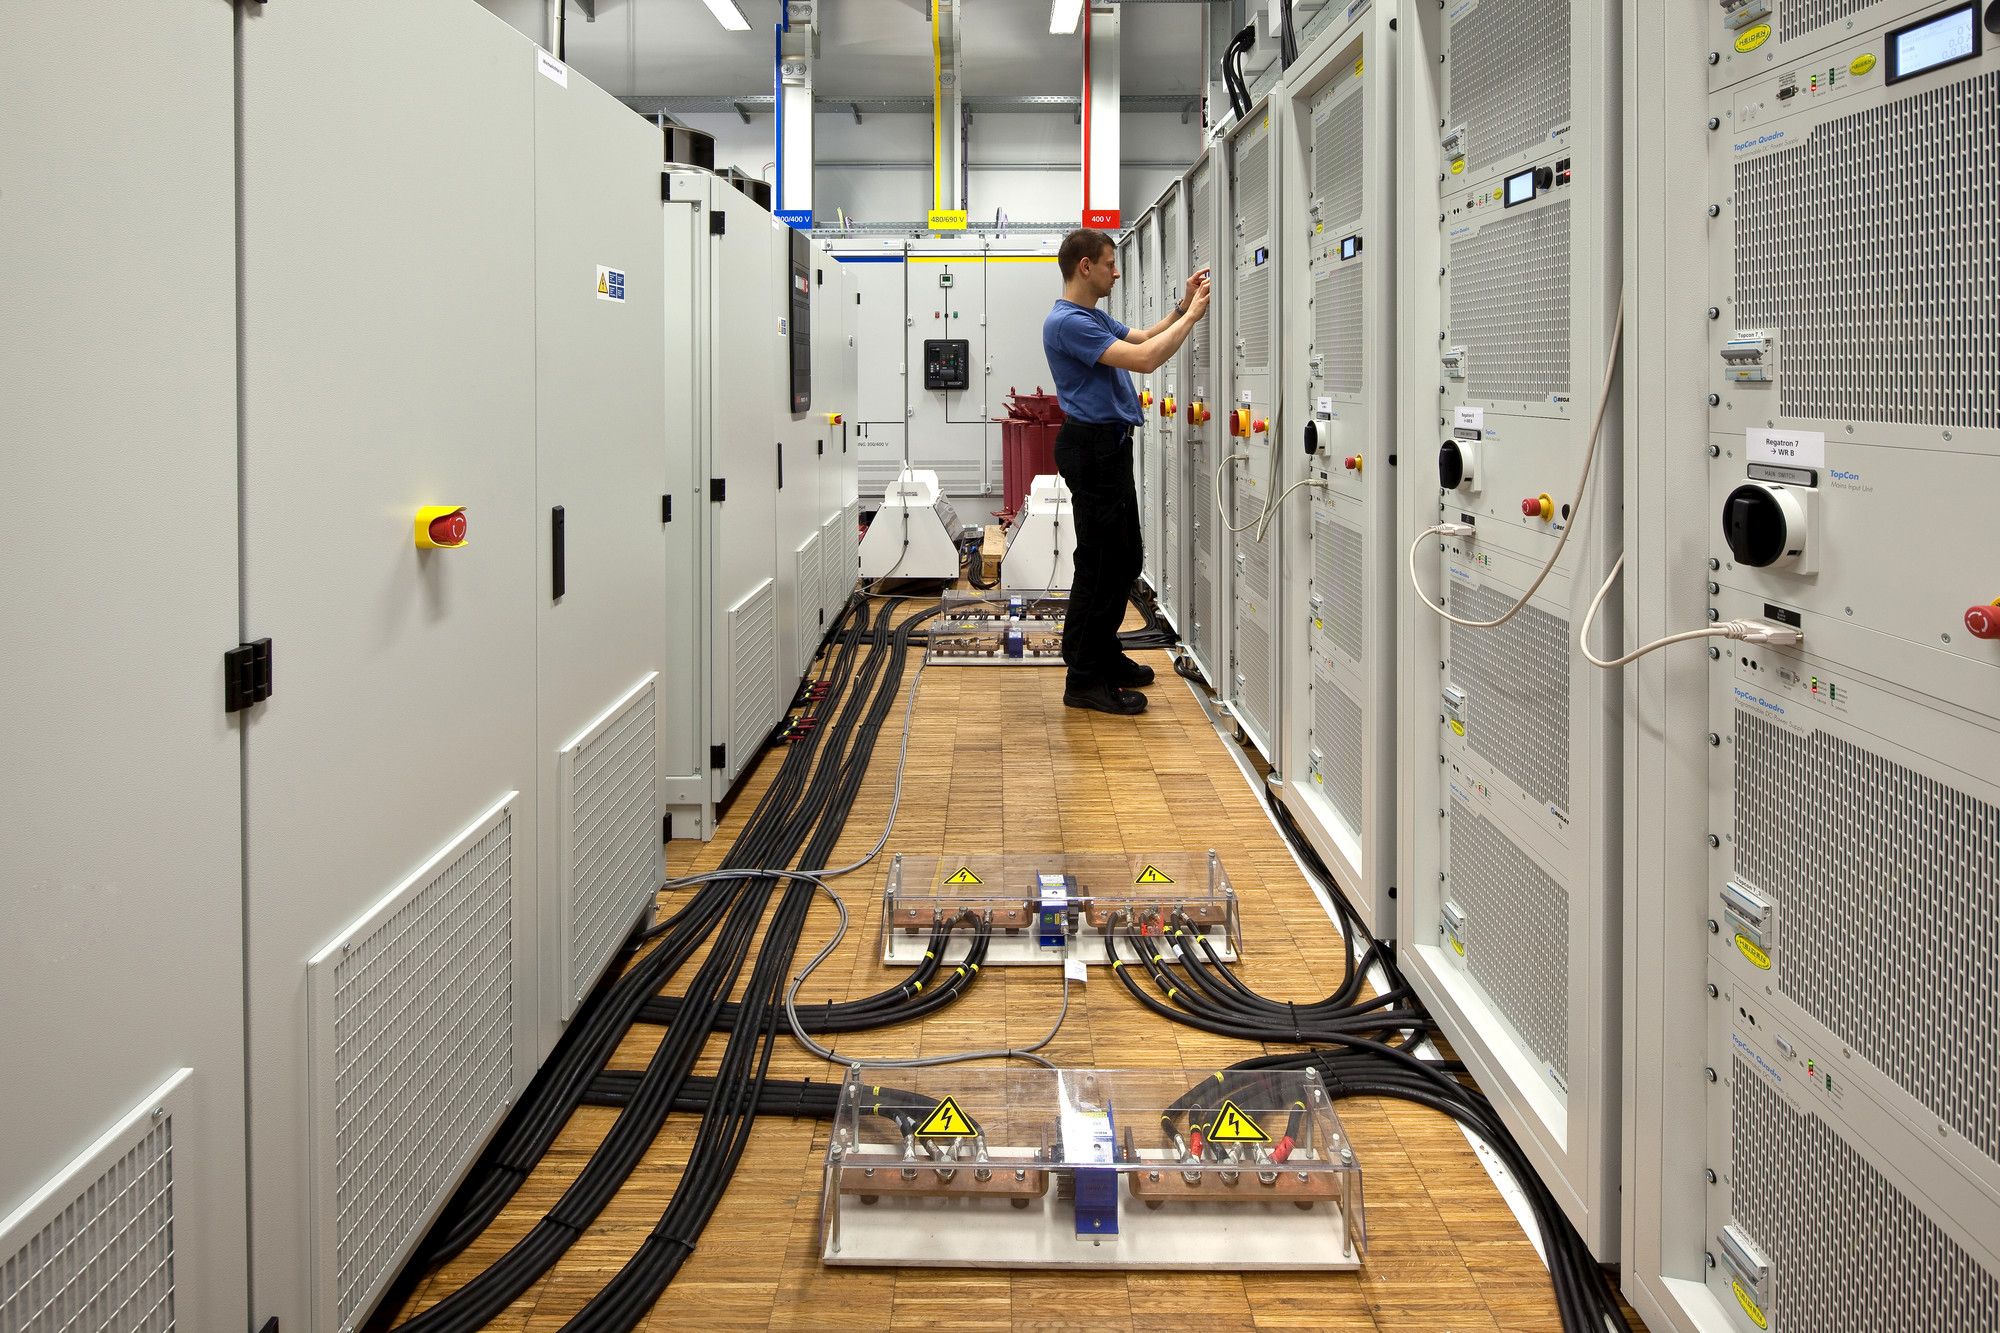 Prüfaufbau im TestLab Power Electronics des Fraunhofer ISE zur Prüfung mit PV-Generator-Simulator (rechts) und Prüfling (links).